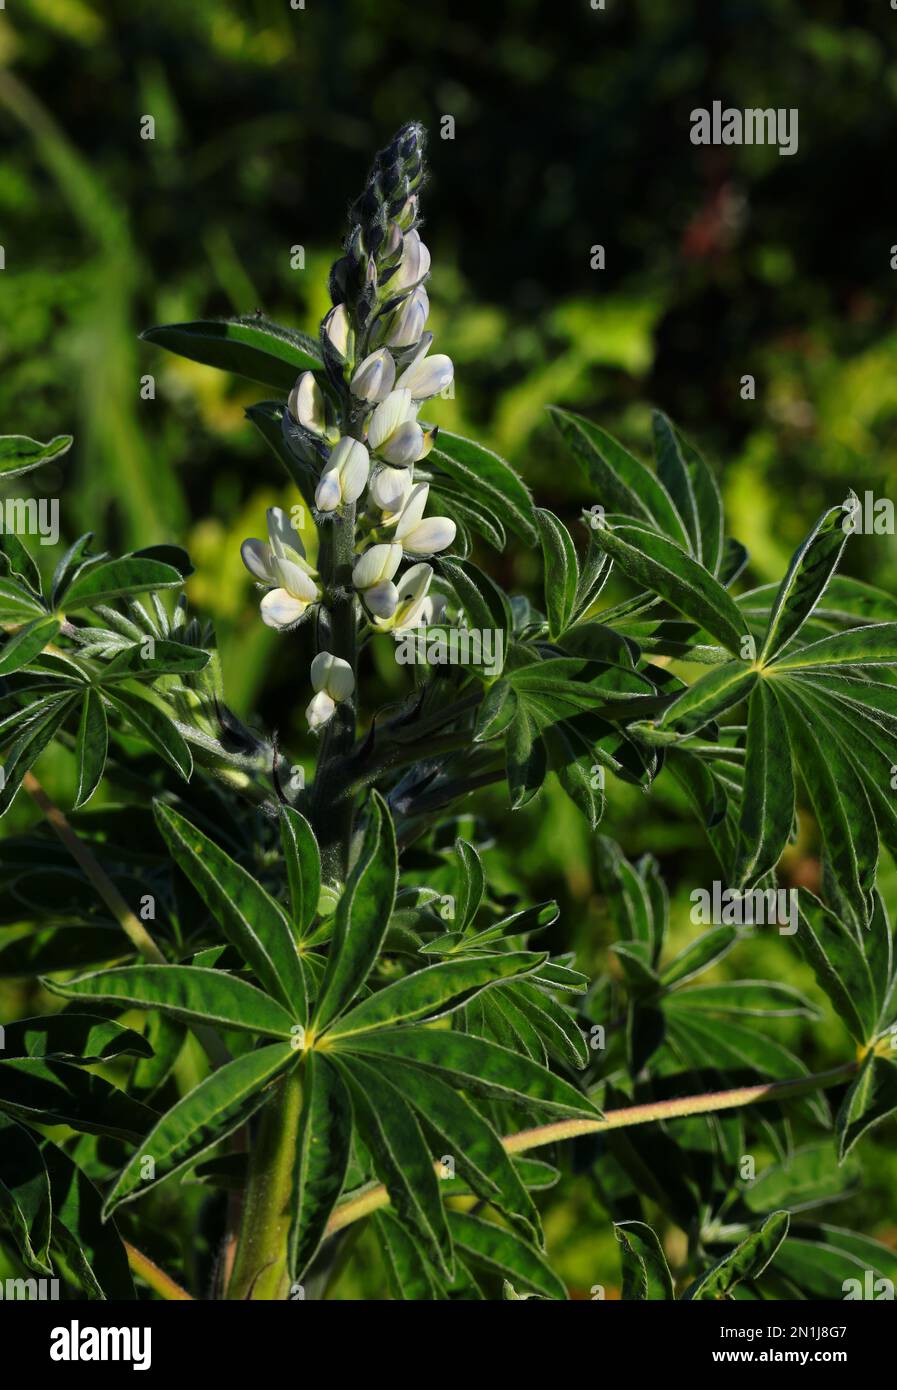 Pianta e fiore di lupino bianco selvatico appena fiorito - Lupinus albus. Famiglia Fabaceae. Oeiras, Portogallo. Legume - i fagioli sono mangiati come aperitive. Foto Stock